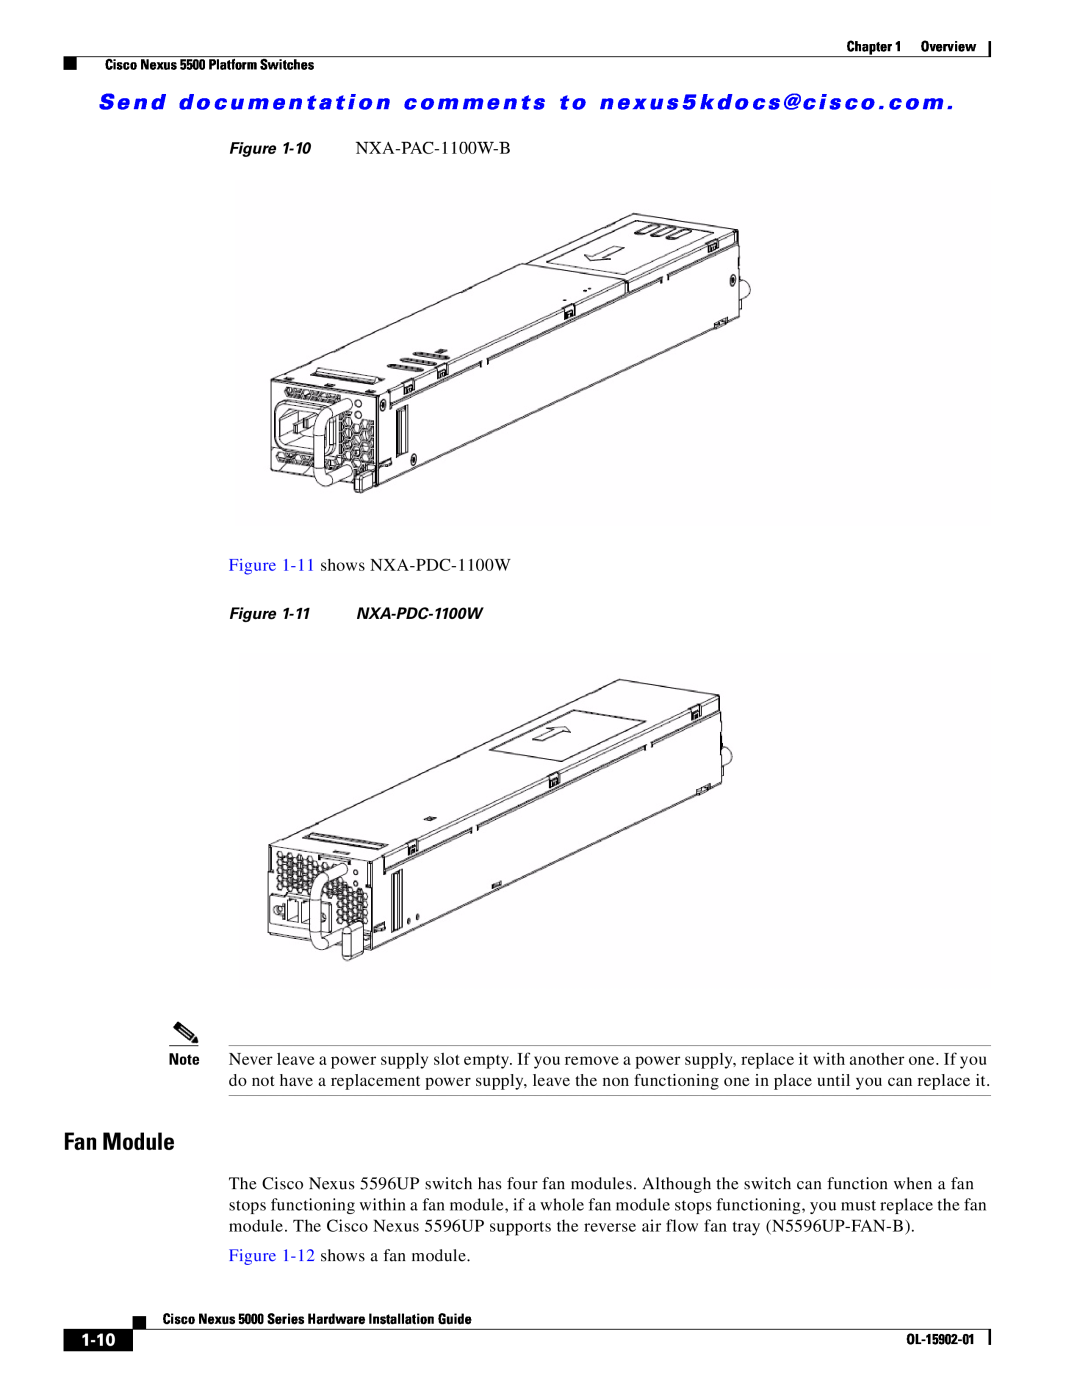 Cisco Systems 5000 manual Fan Module, 1-10 